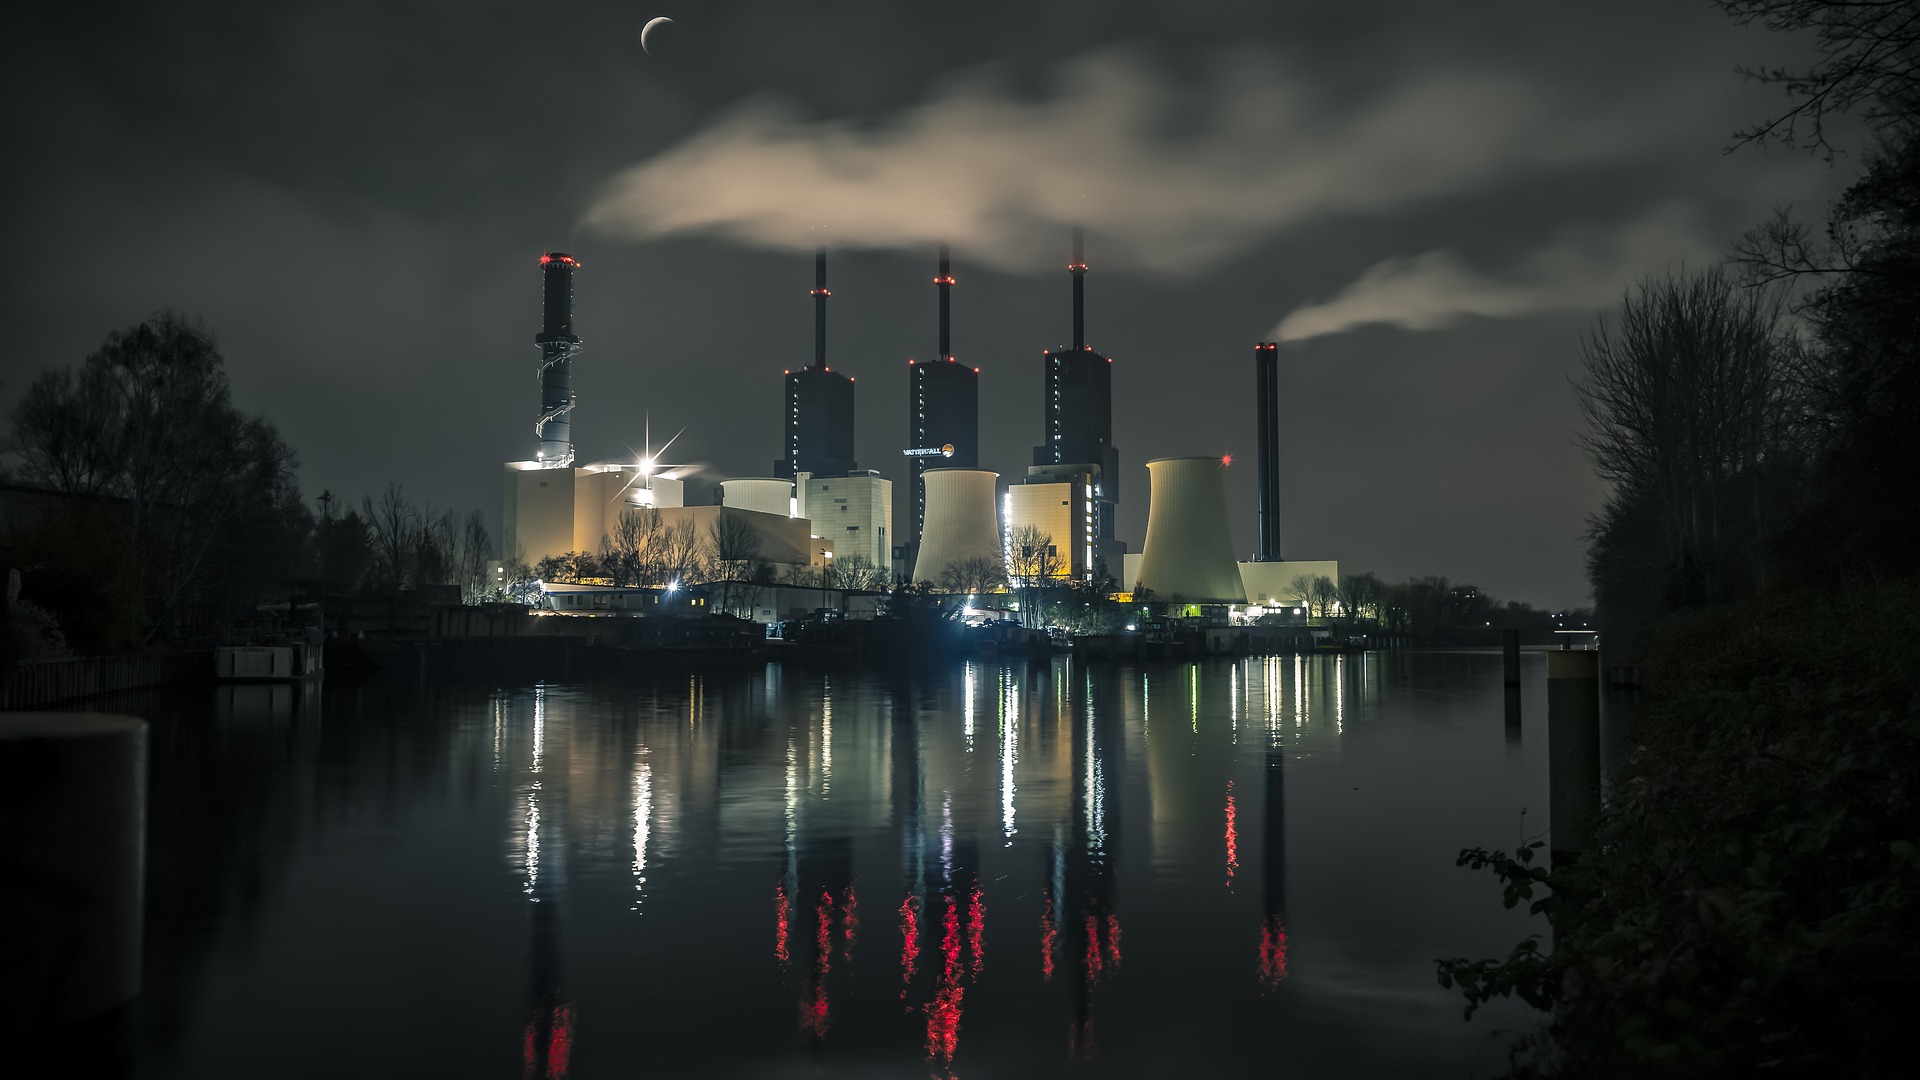 imagem de rio rodeado por mata durante a noite e, ao fundo, uma usina hidrelétrica iluminada com três torres e dois reatores.